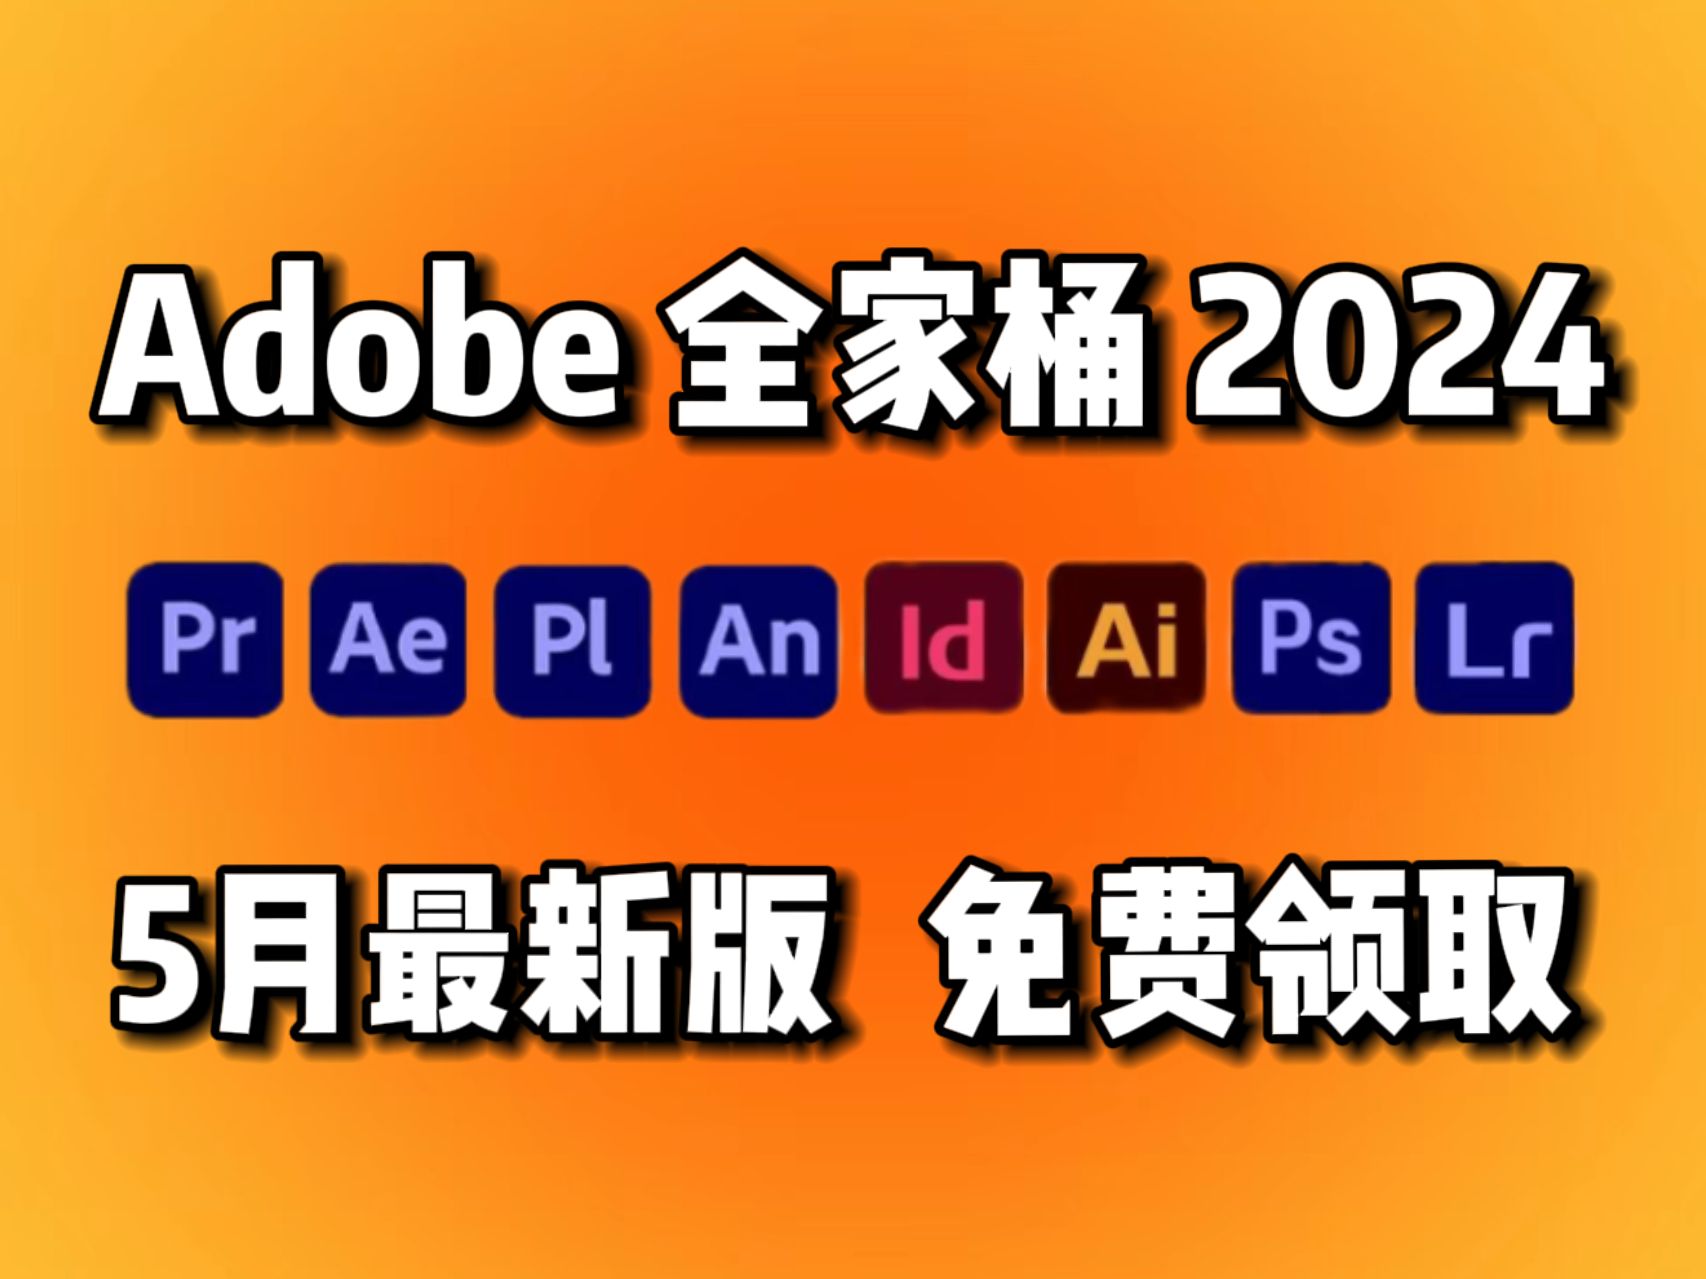 【Adobe全家桶2024】5月最新版本 免费下载安装！全新的PR AE Au Ai c4d PS等常用软件！一键安装！永久使用不限速下载！白嫖系列！